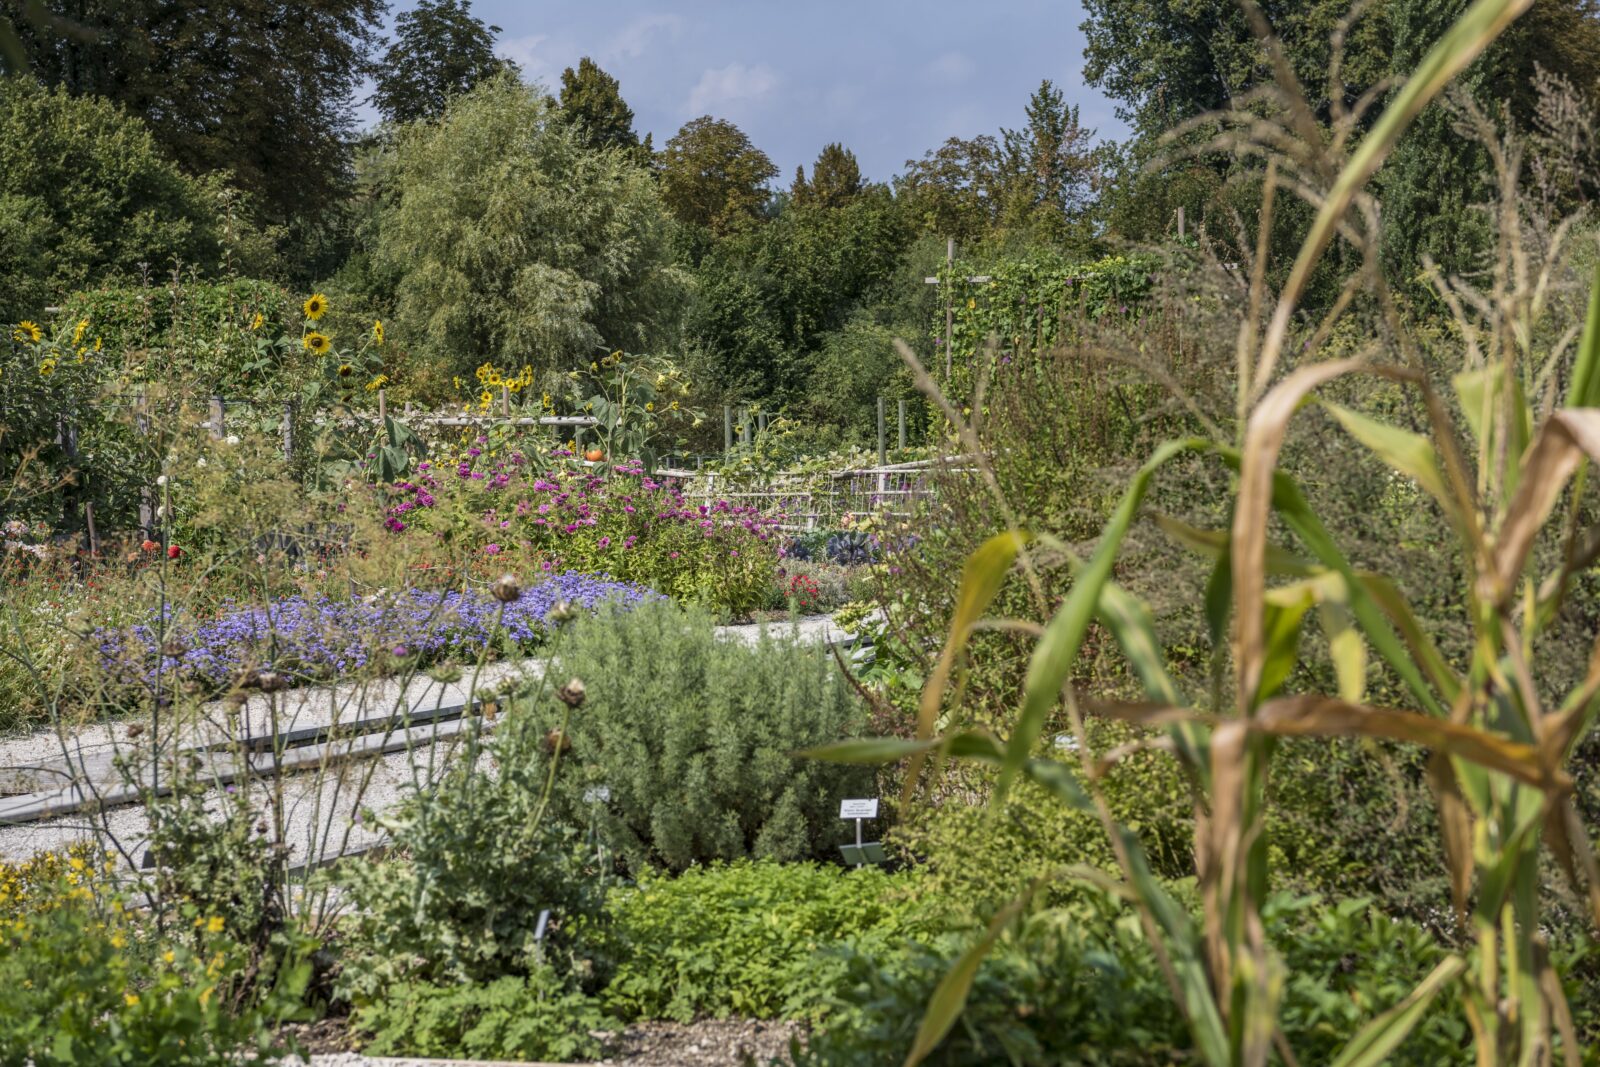 Bauerngarten mit seltenen ProSpecieRara-Gemüsesorten
© Christoph Merian Stiftung, Kathrin Schulthess